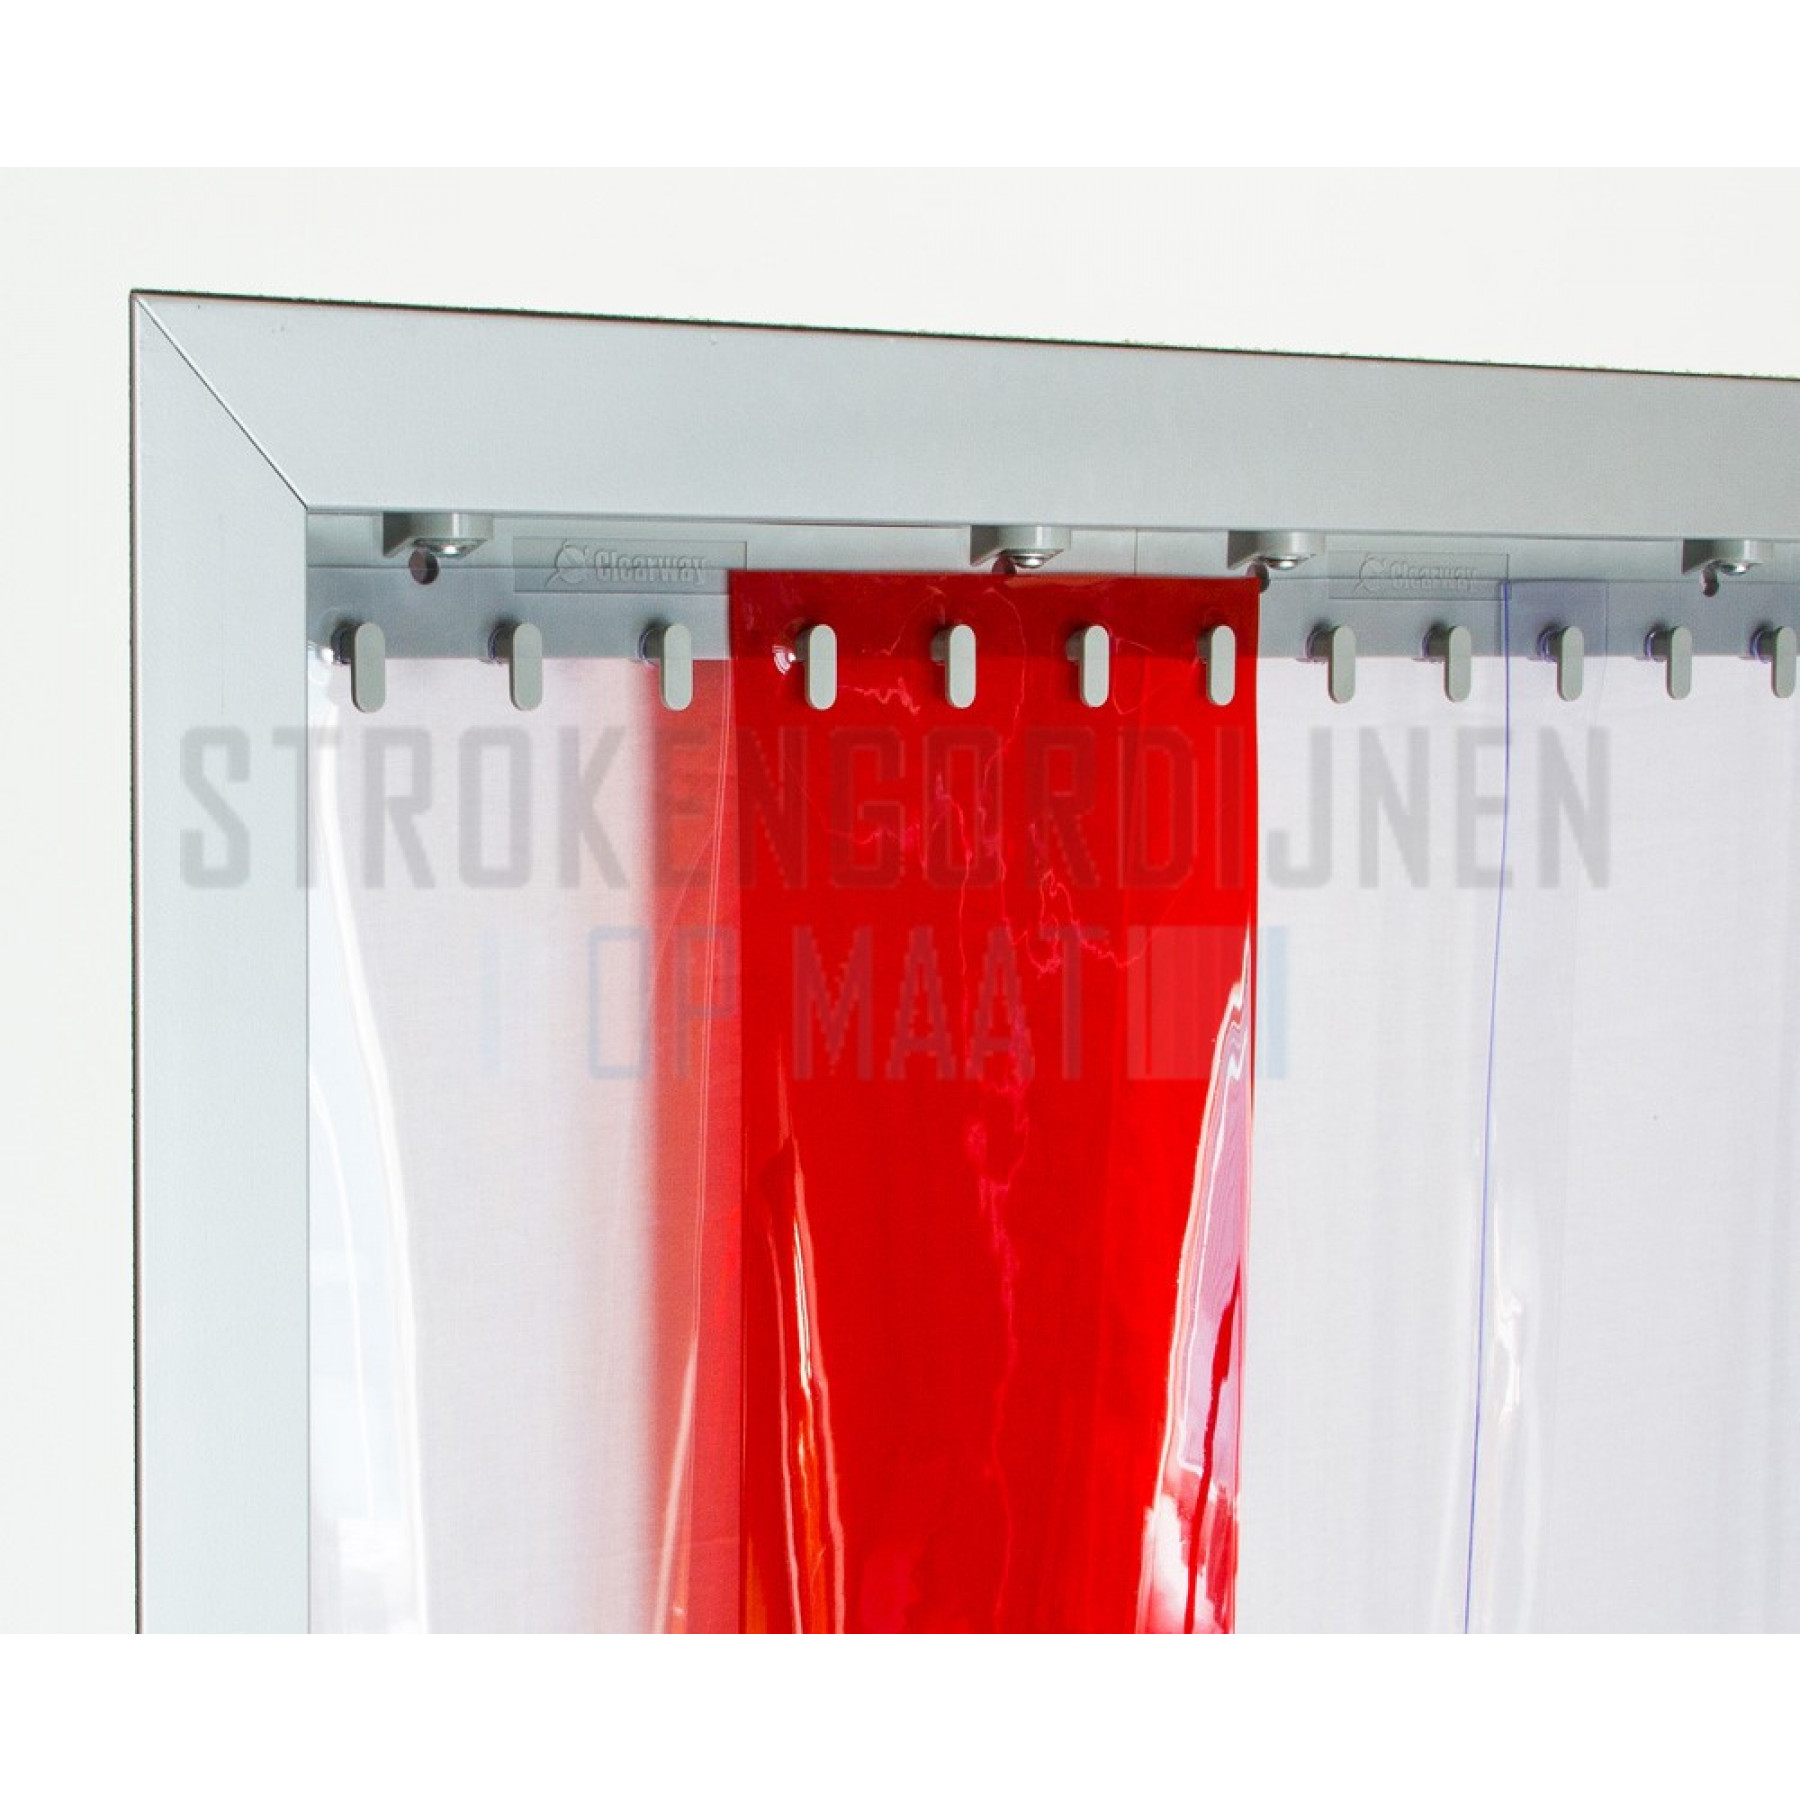 PVC op rol, 300mm breed, 3mm dik, 50 meter lengte, kleur rood, transparant